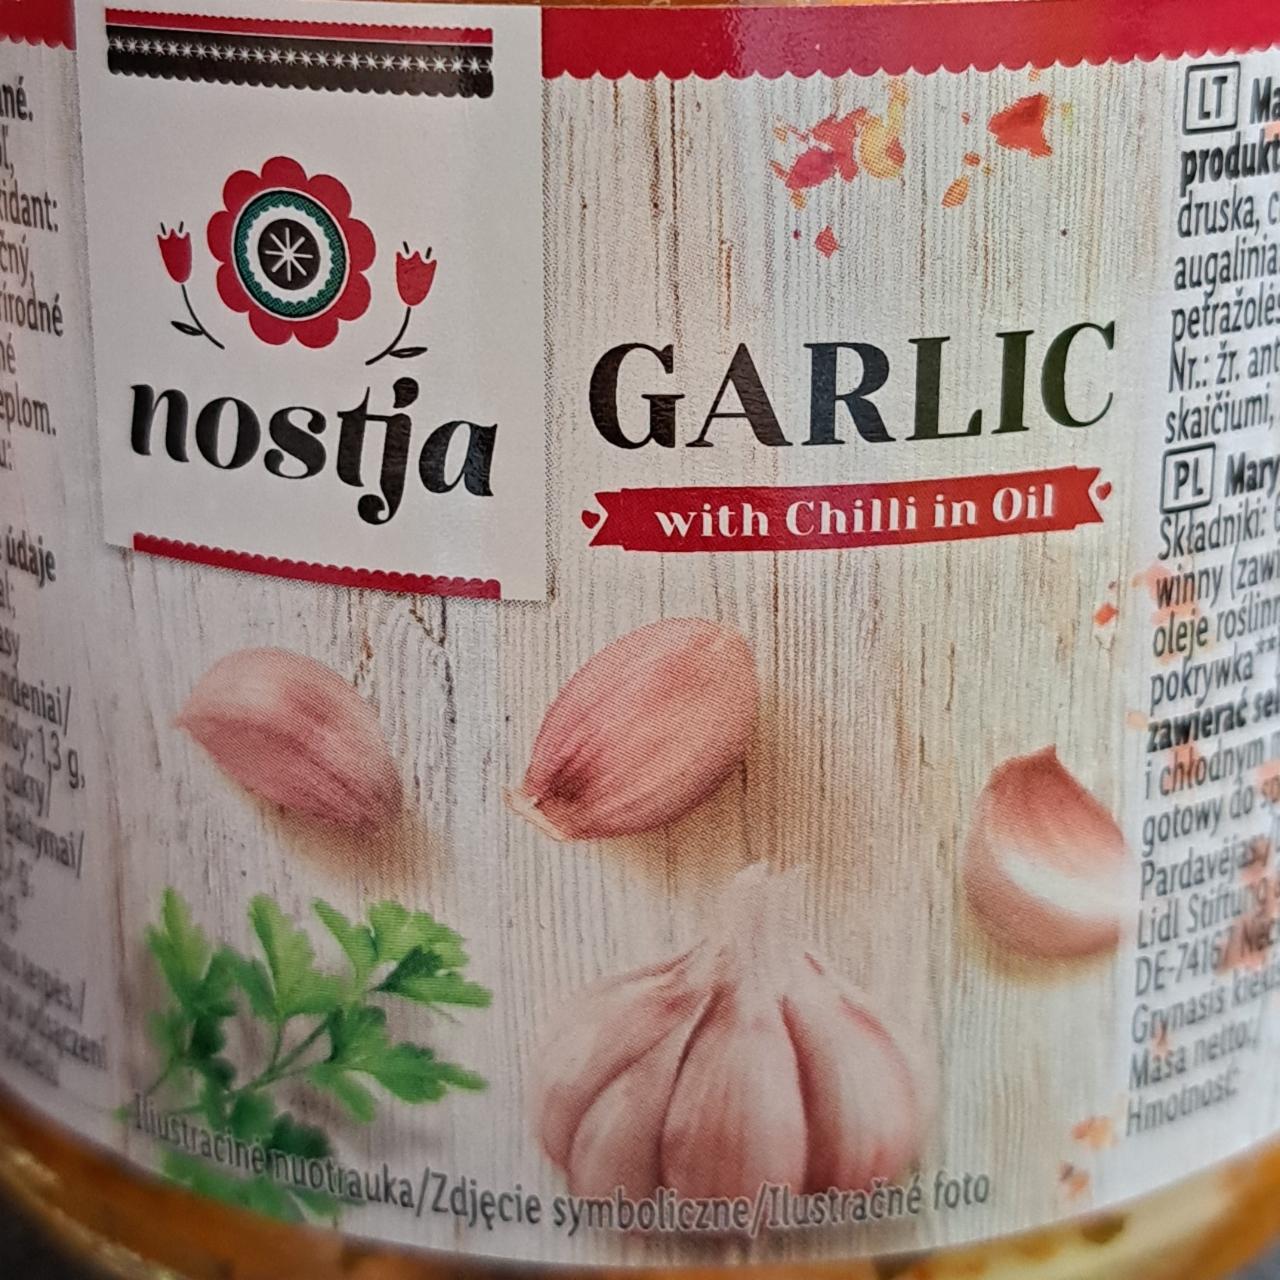 Fotografie - Garlic with Chilli in Oil Nostja